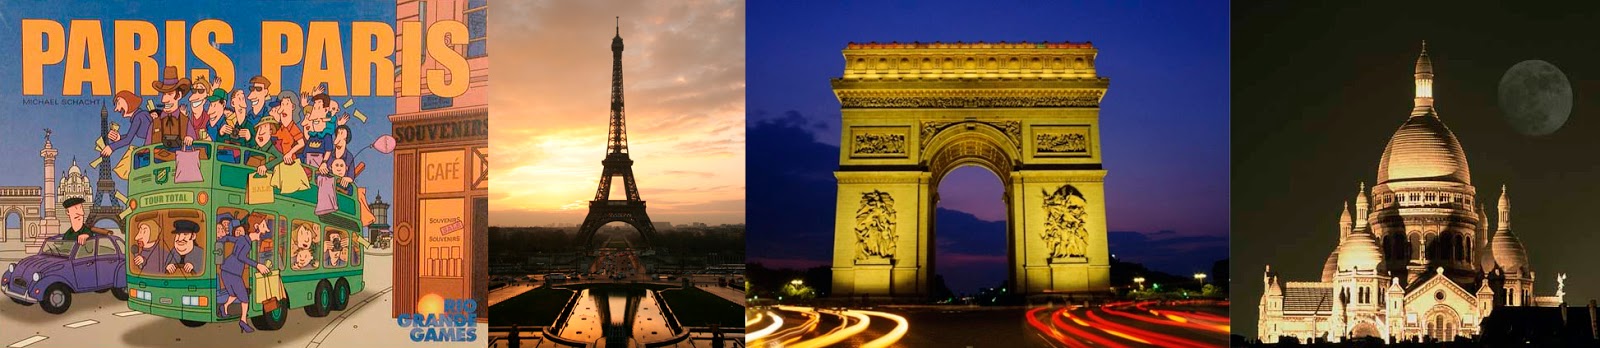 Portada de Paris, Paris - Torre Eiffel  - Arco del triunfo - Basílica del Sagrado Corazón 